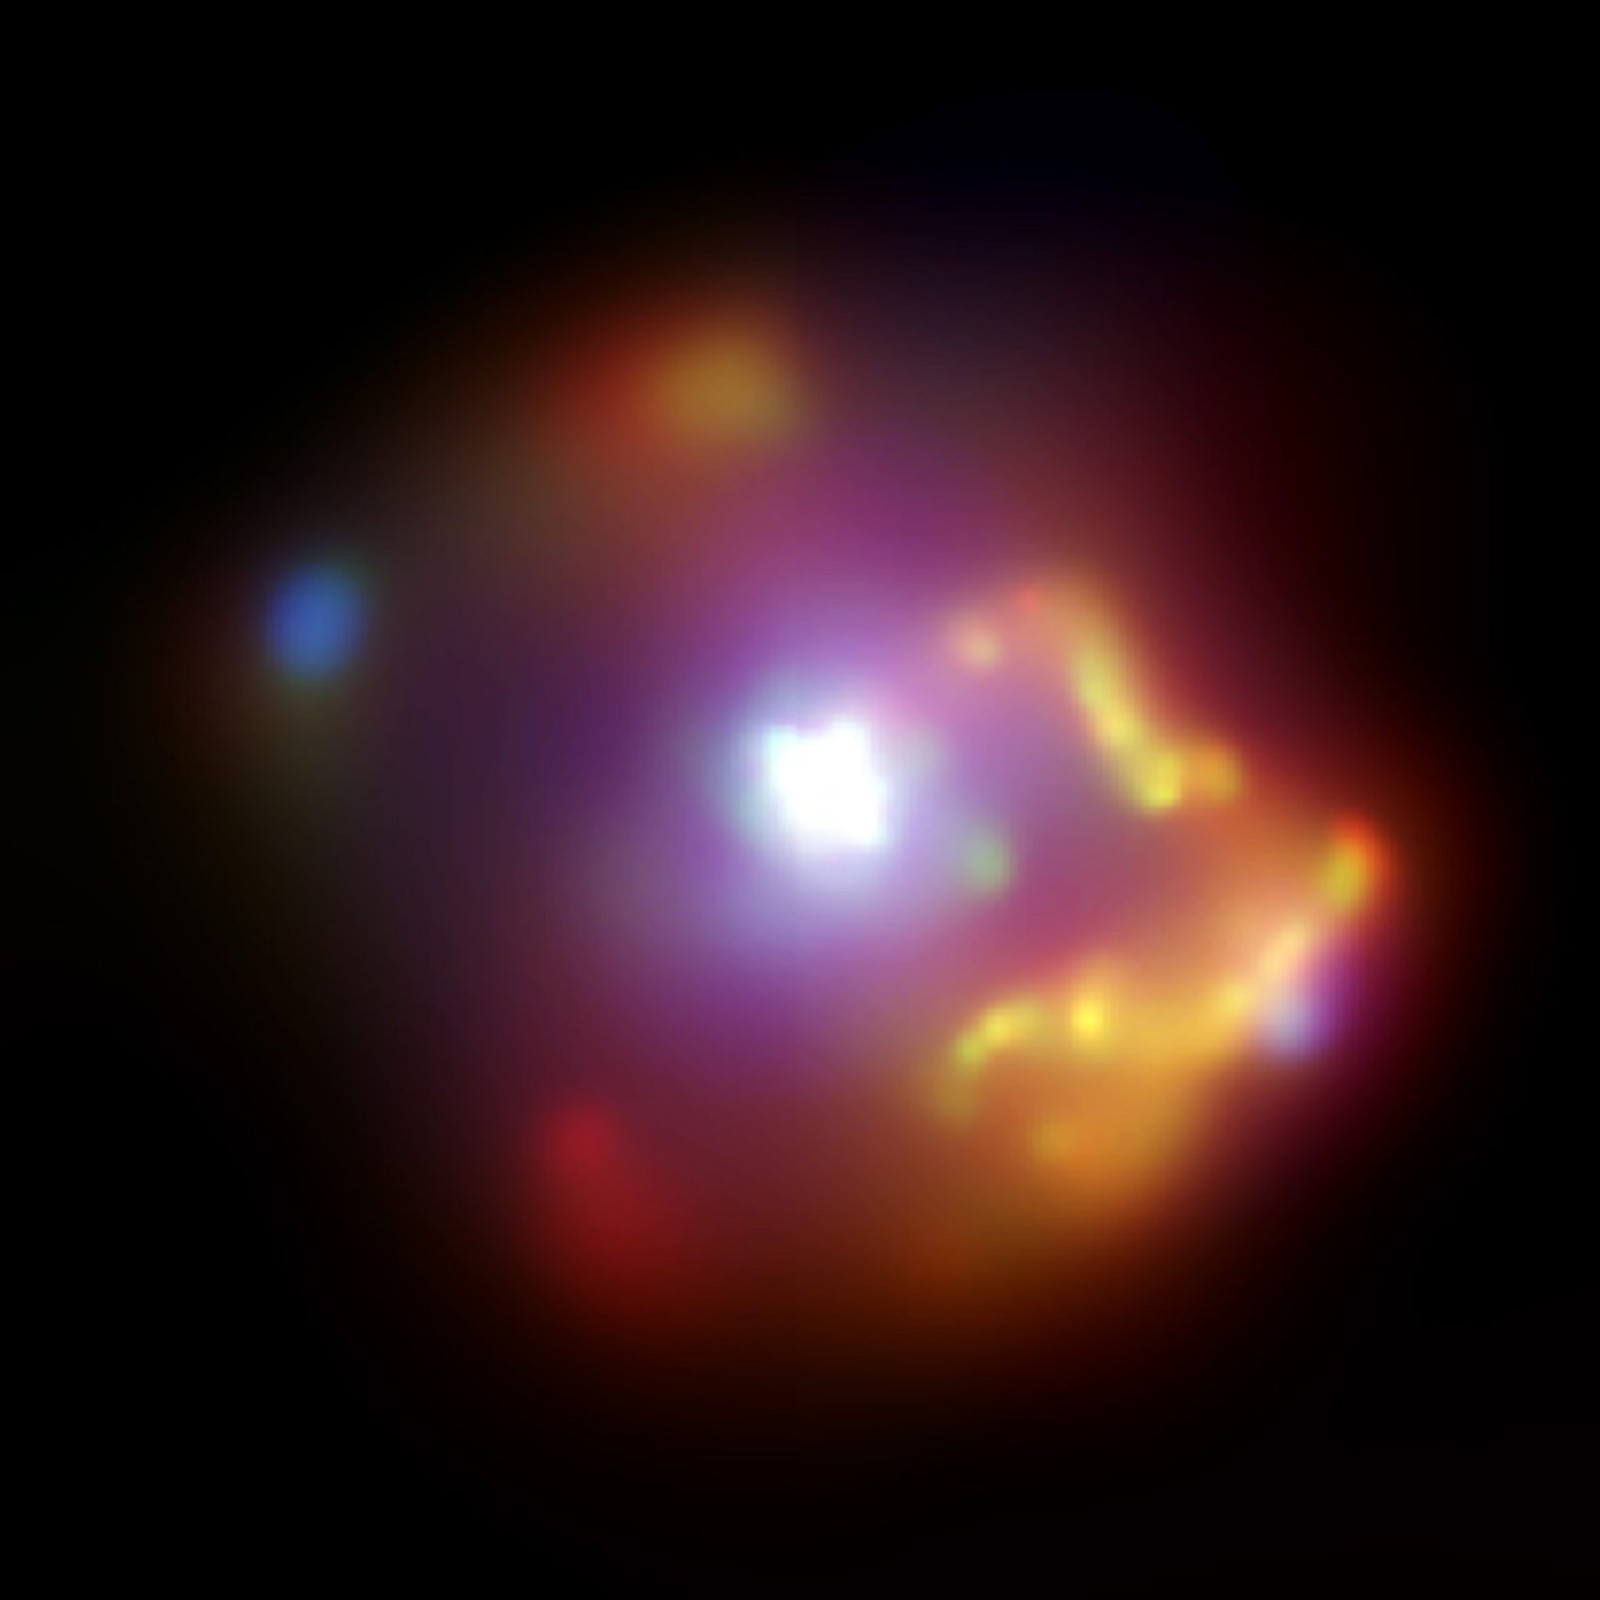 trojwymiarowy model supernowej